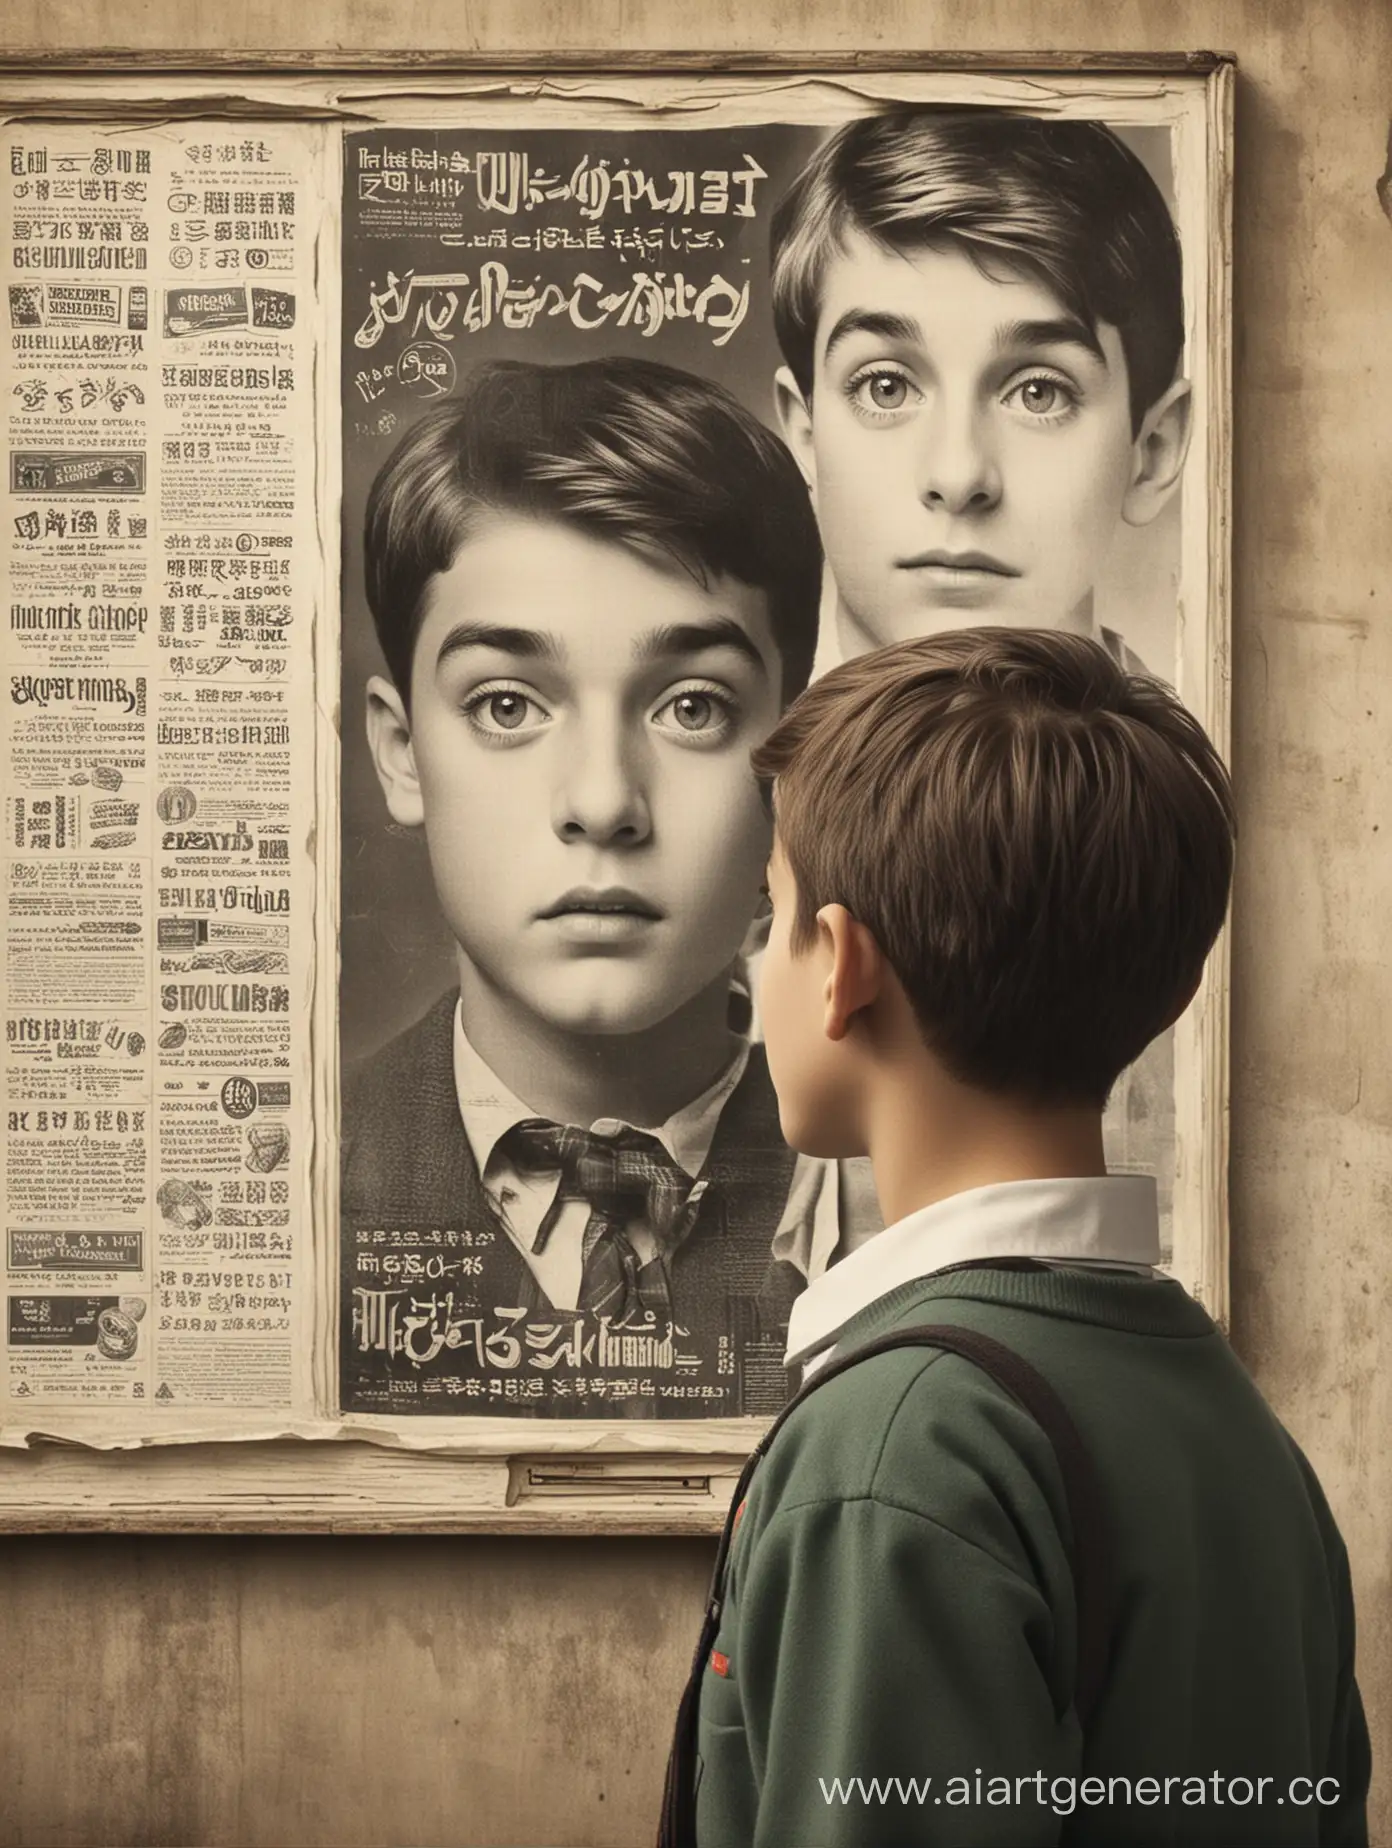 язык рекламы глазами школьника
мальчик смотрит на рекламу